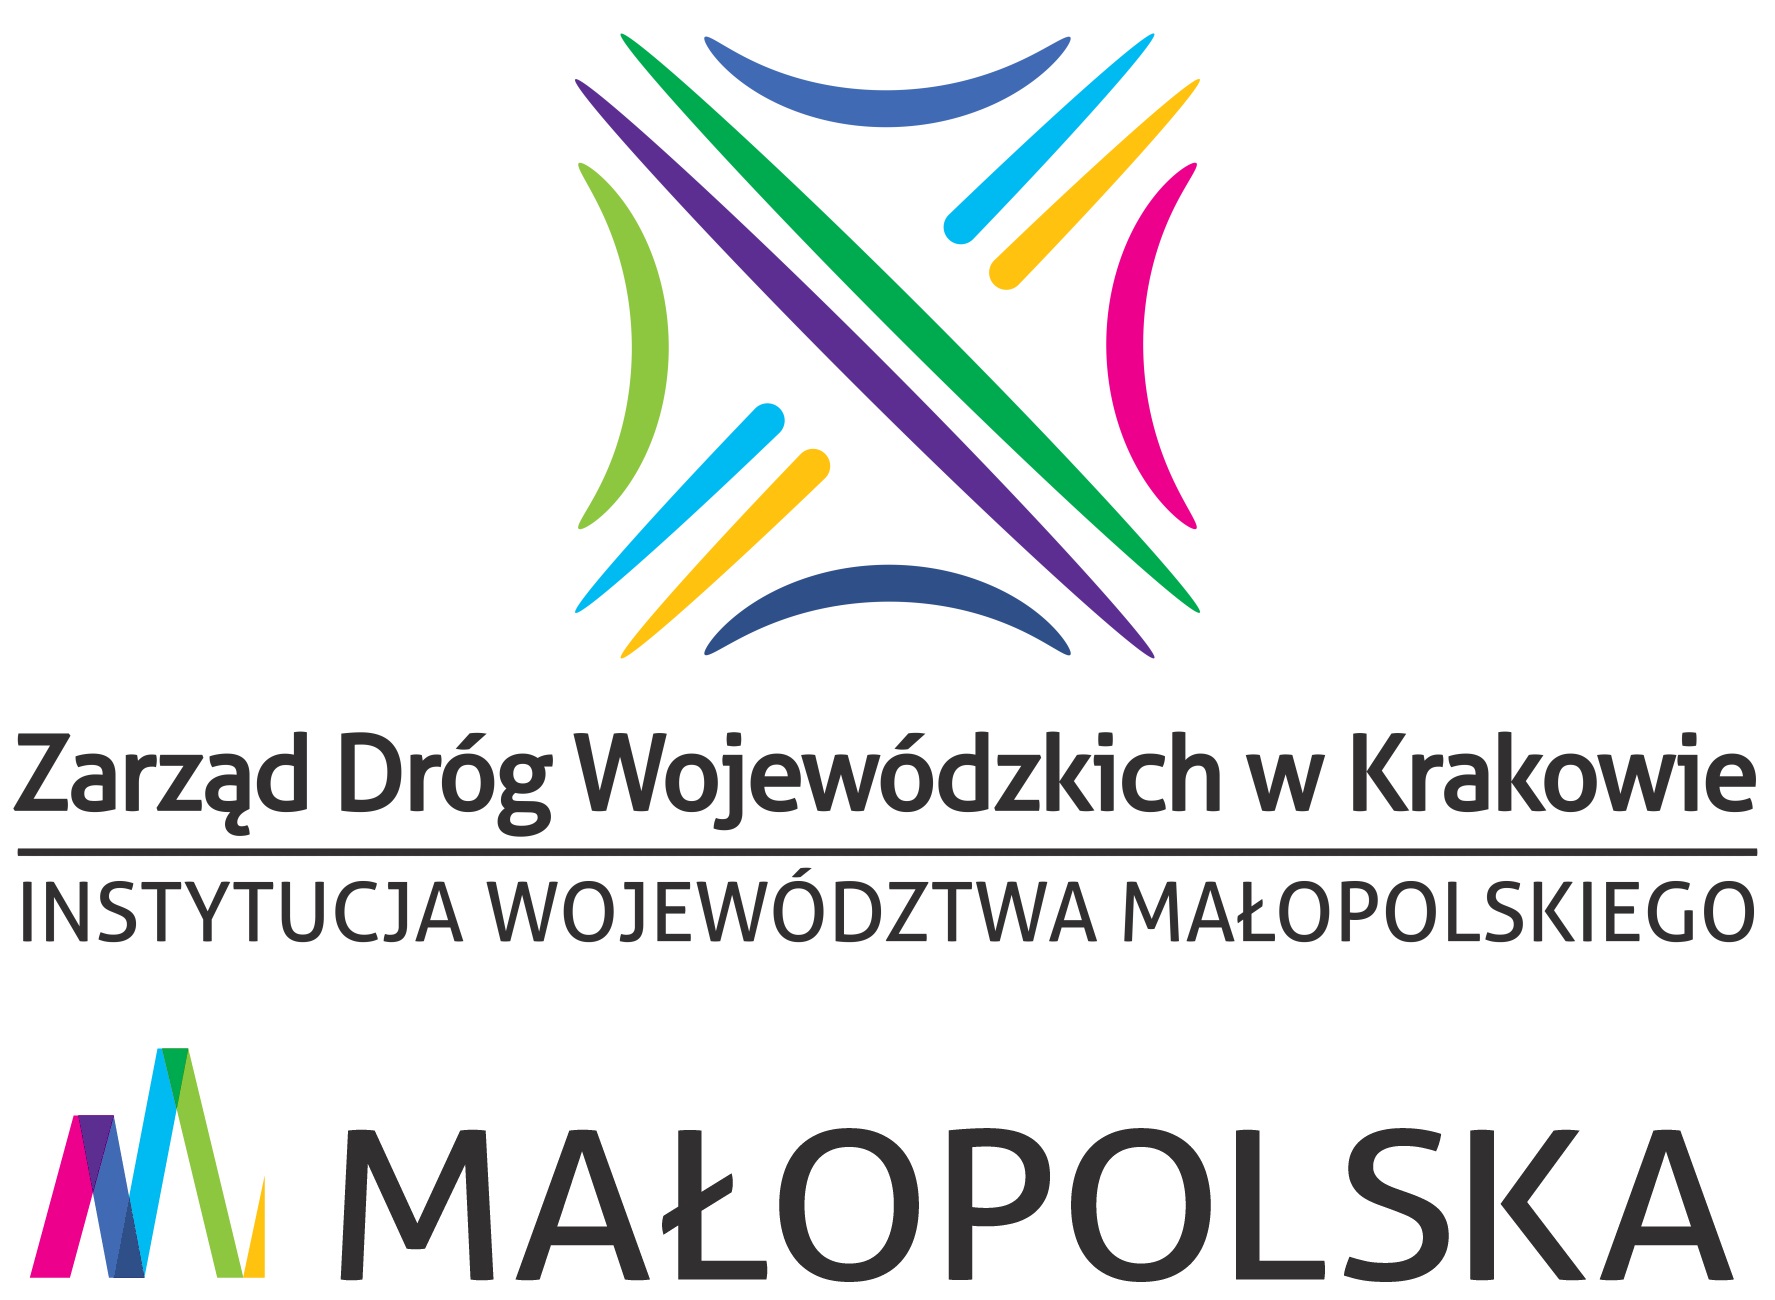 Zarząd Dróg Wojewódzkich w Krakowie